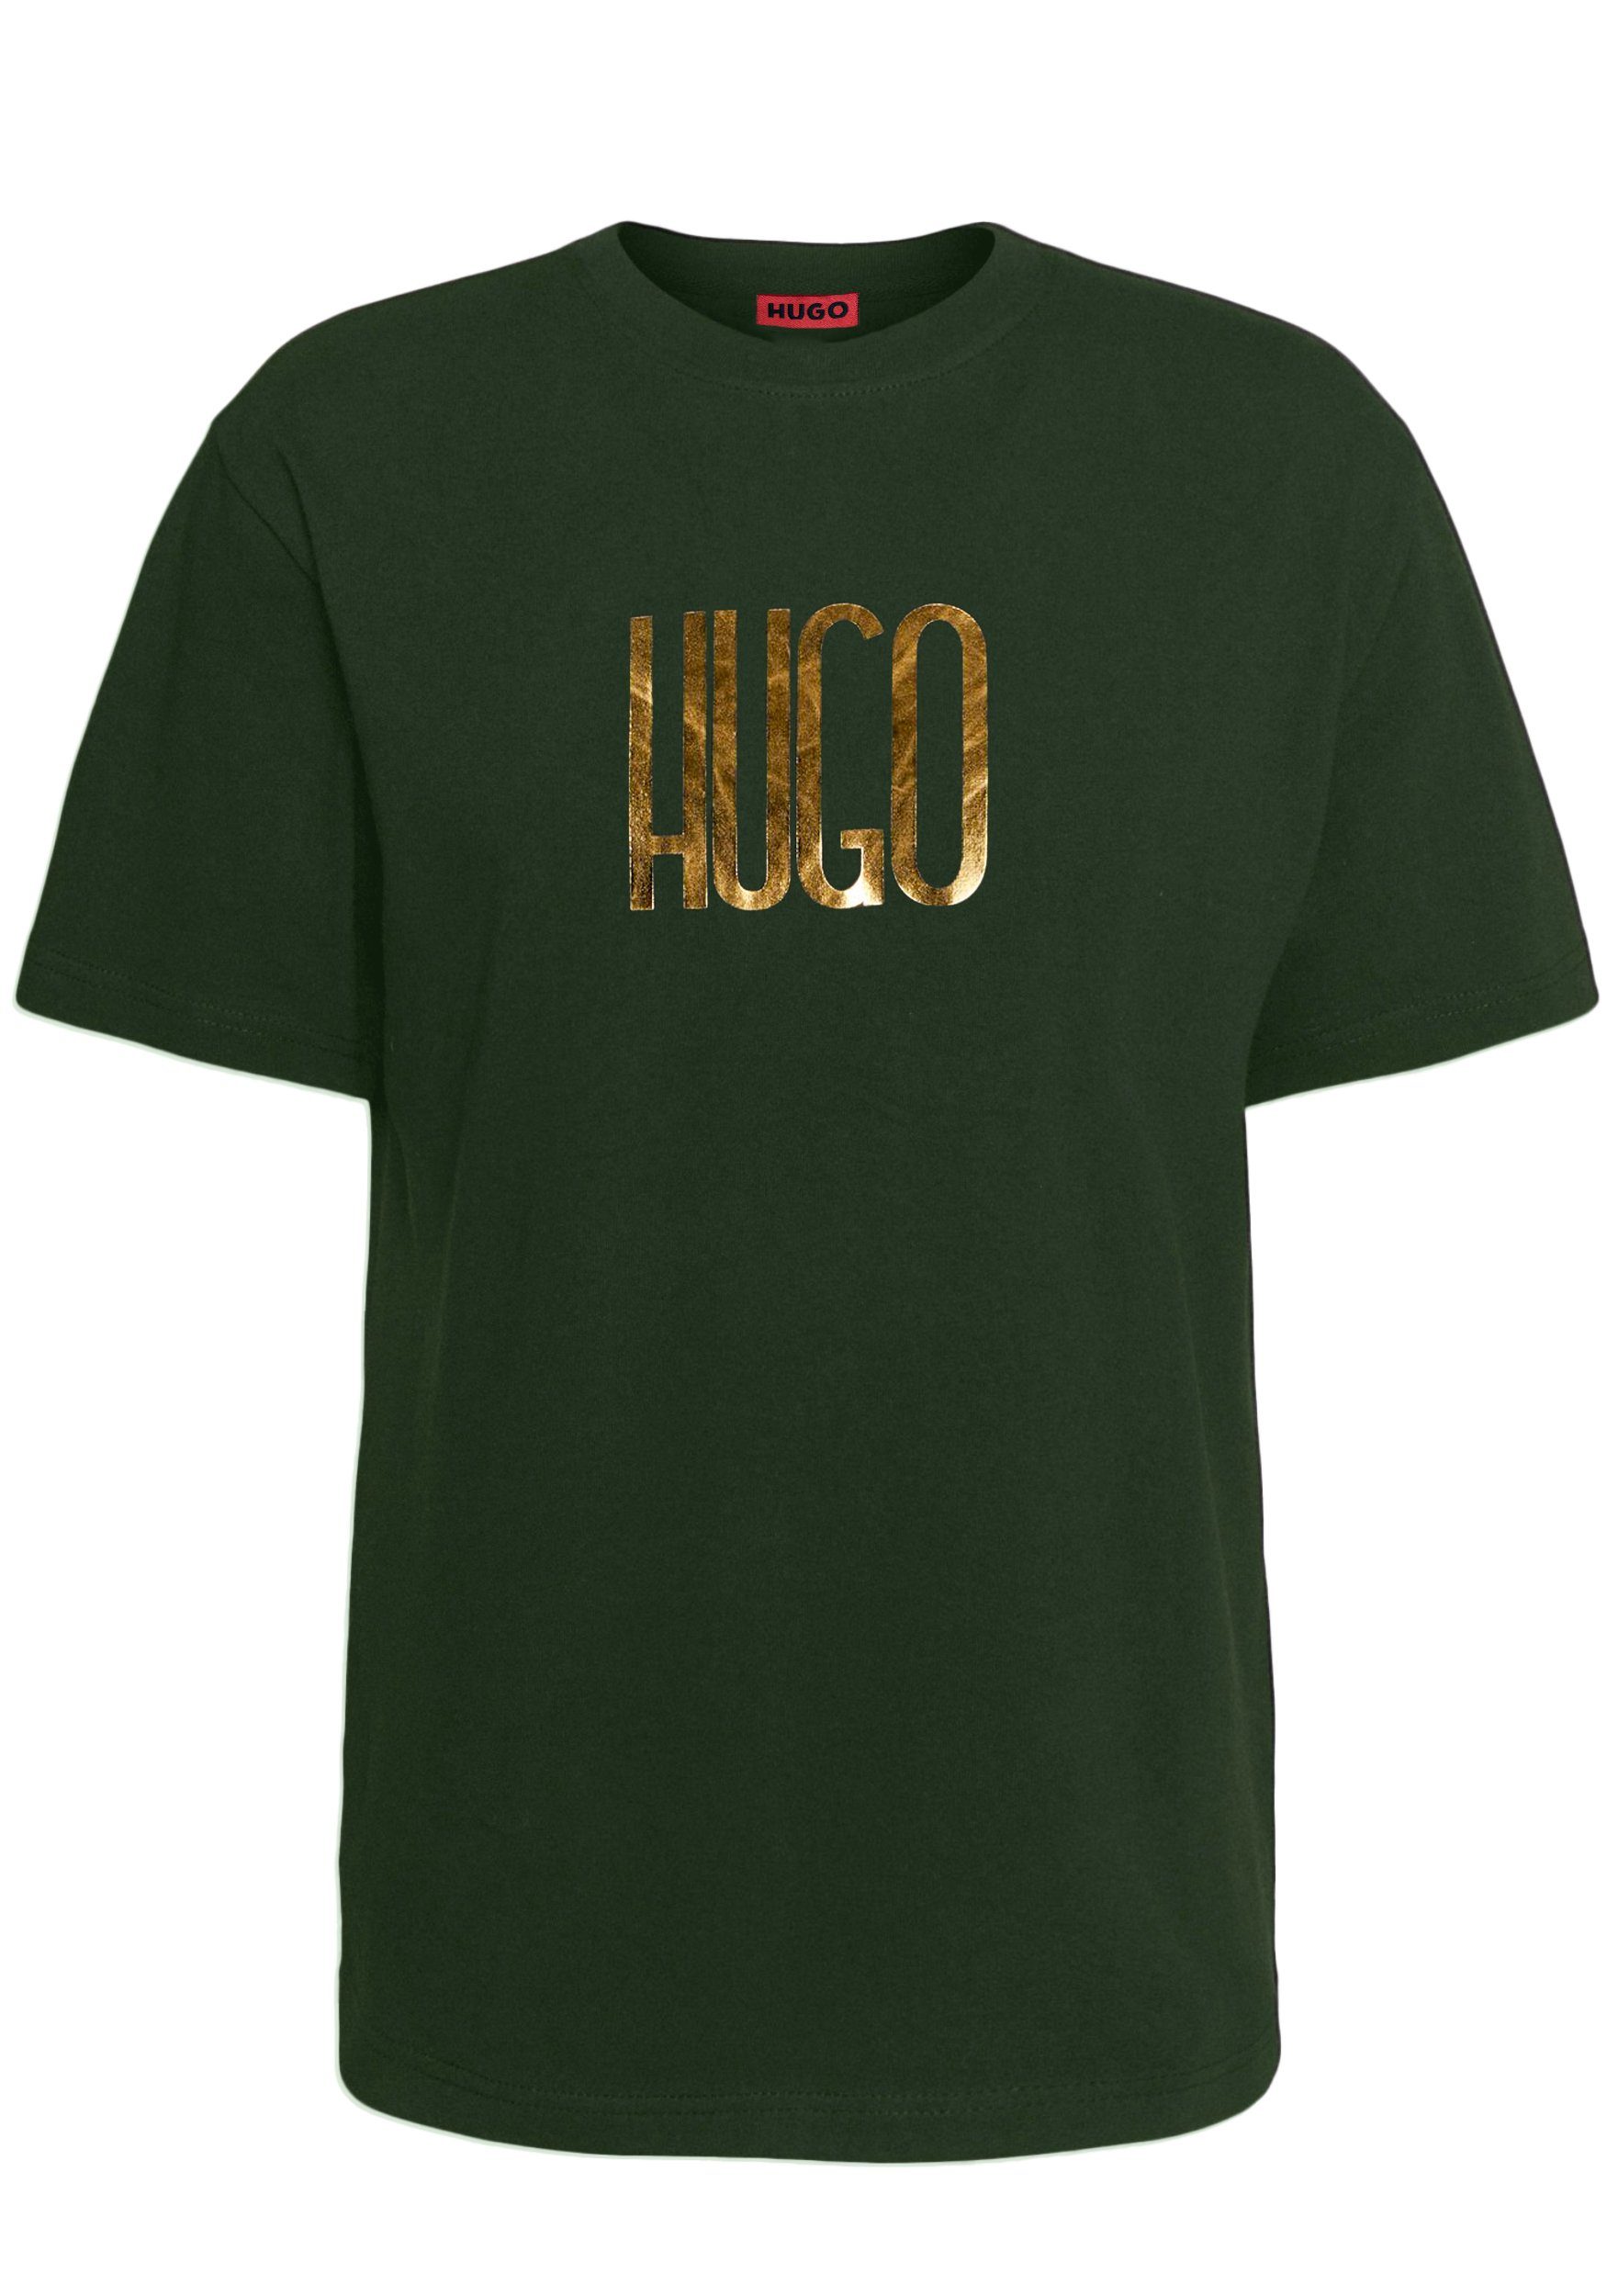 auf Print Logo T-Shirt Grün Dartlap Brust HUGO der Hugo